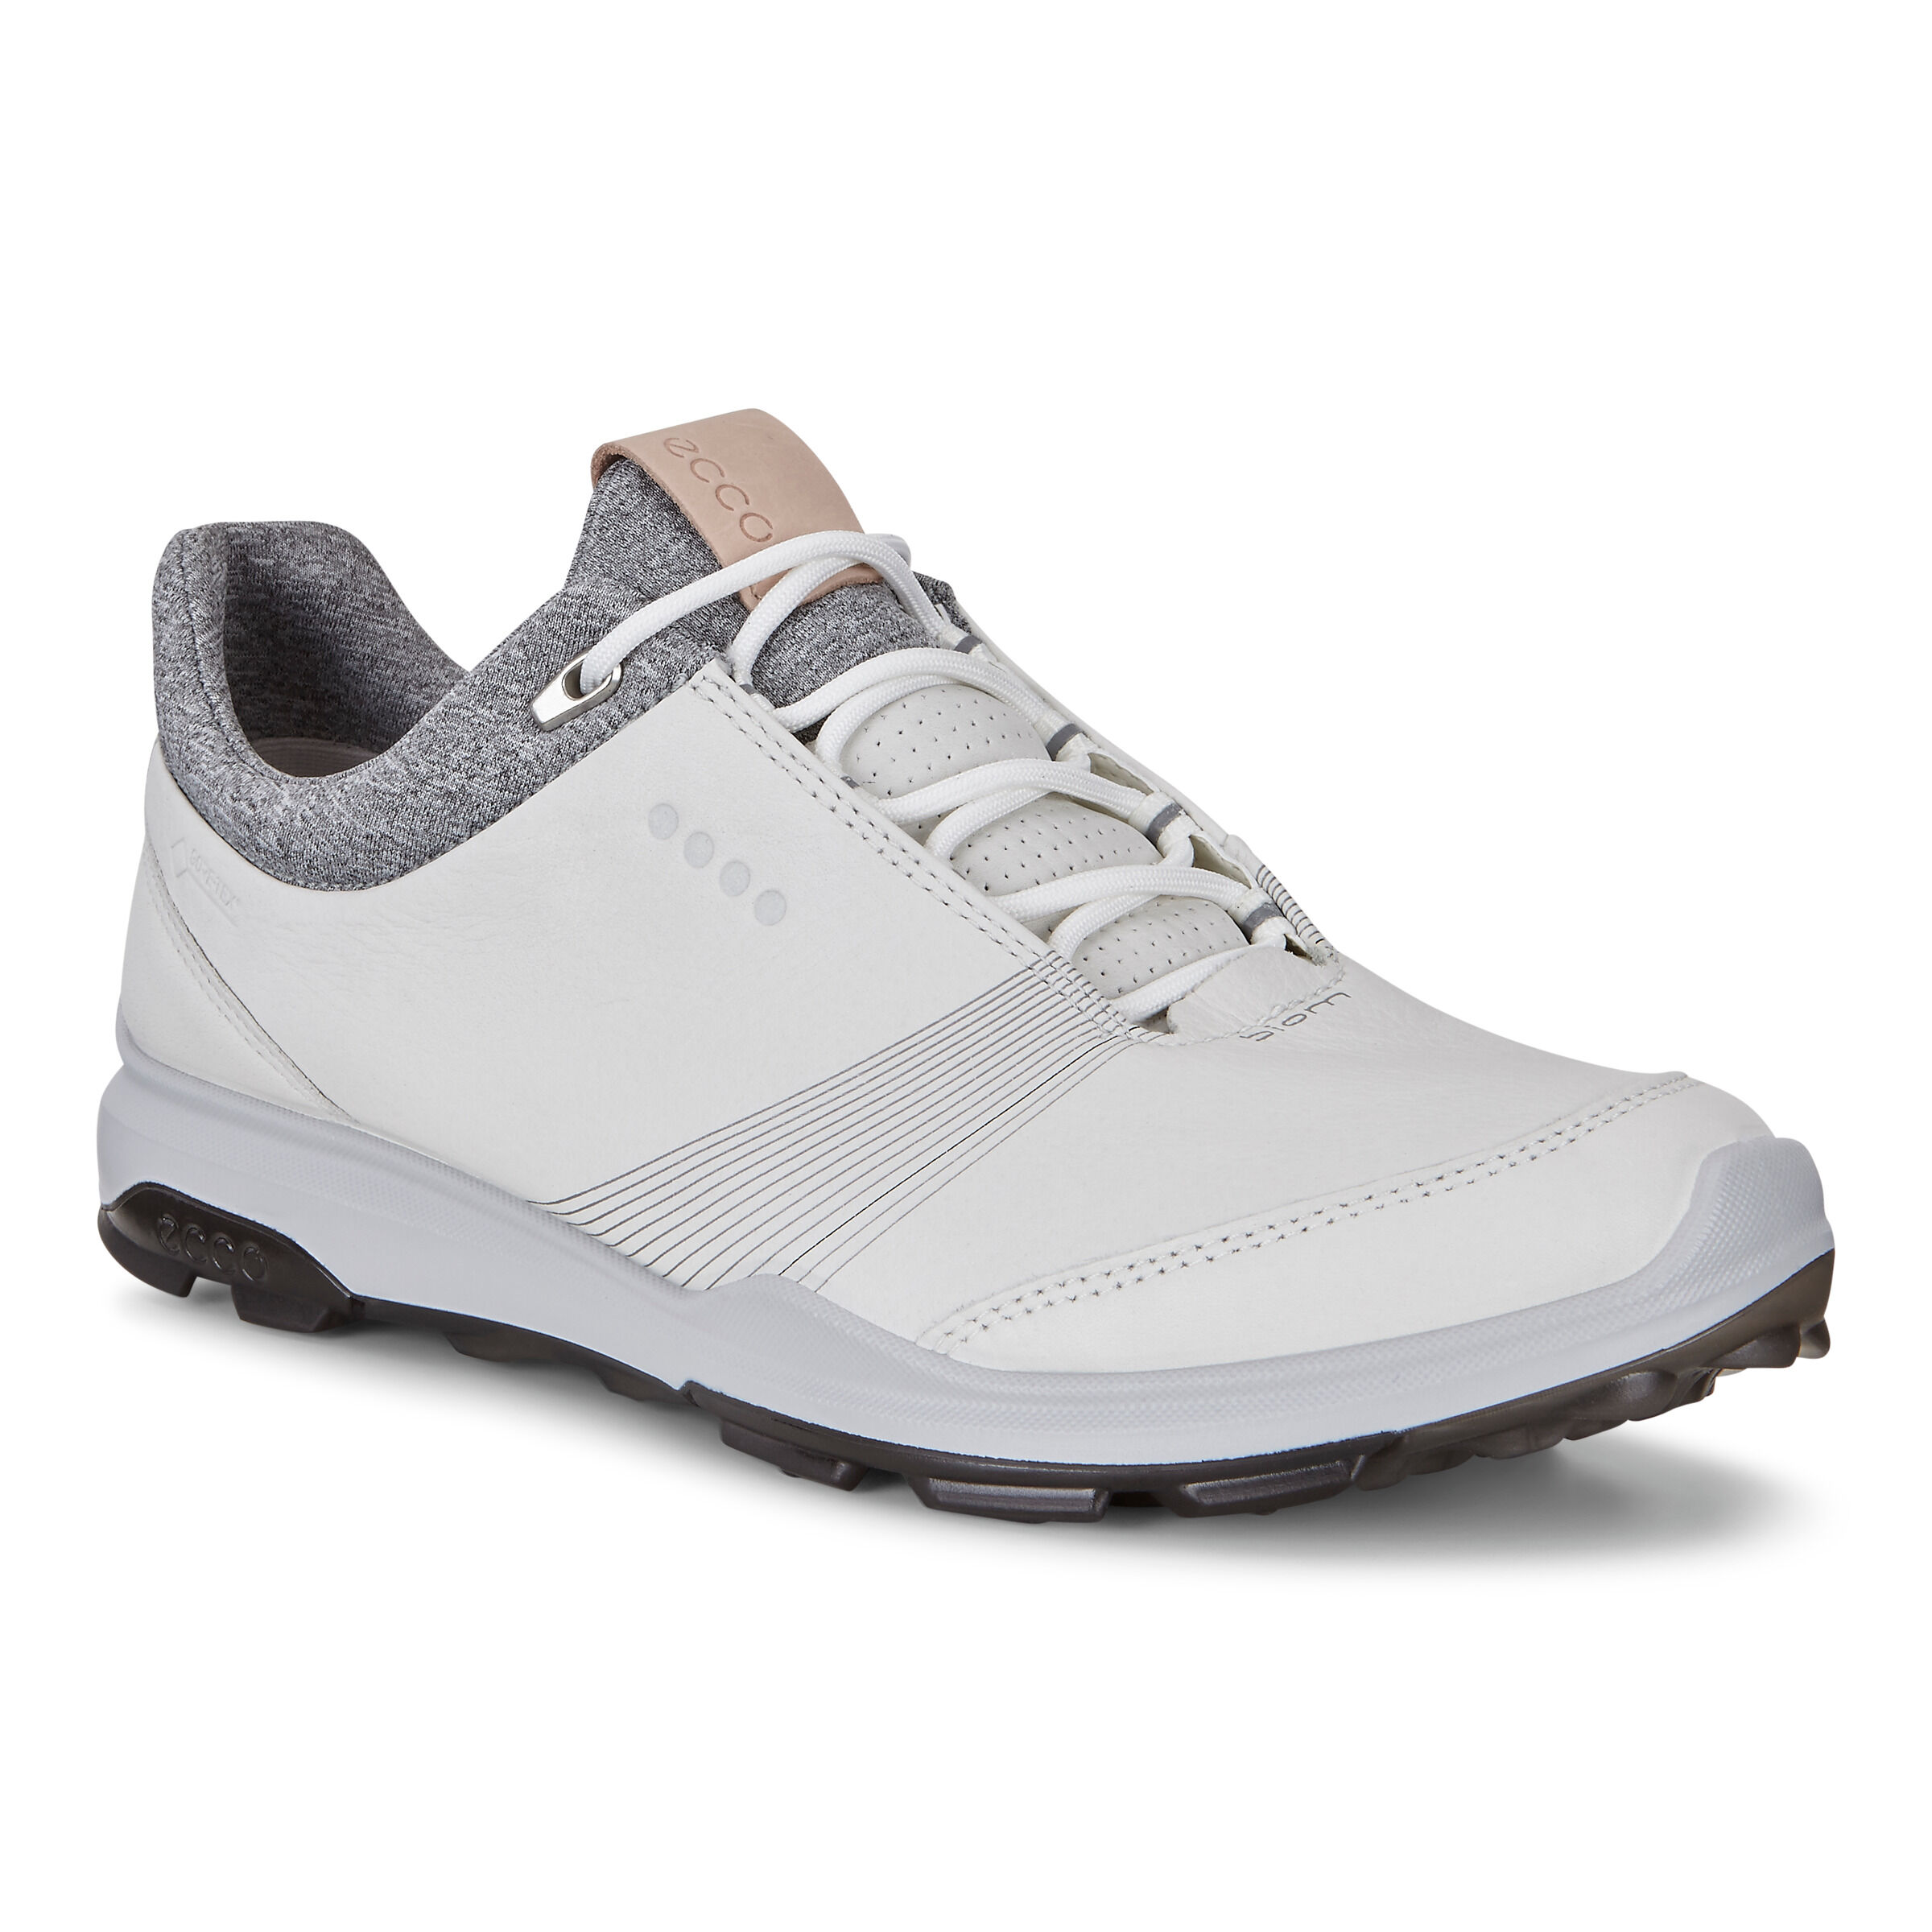 Women's BIOM Golf Shoes | ECCO® Shoes